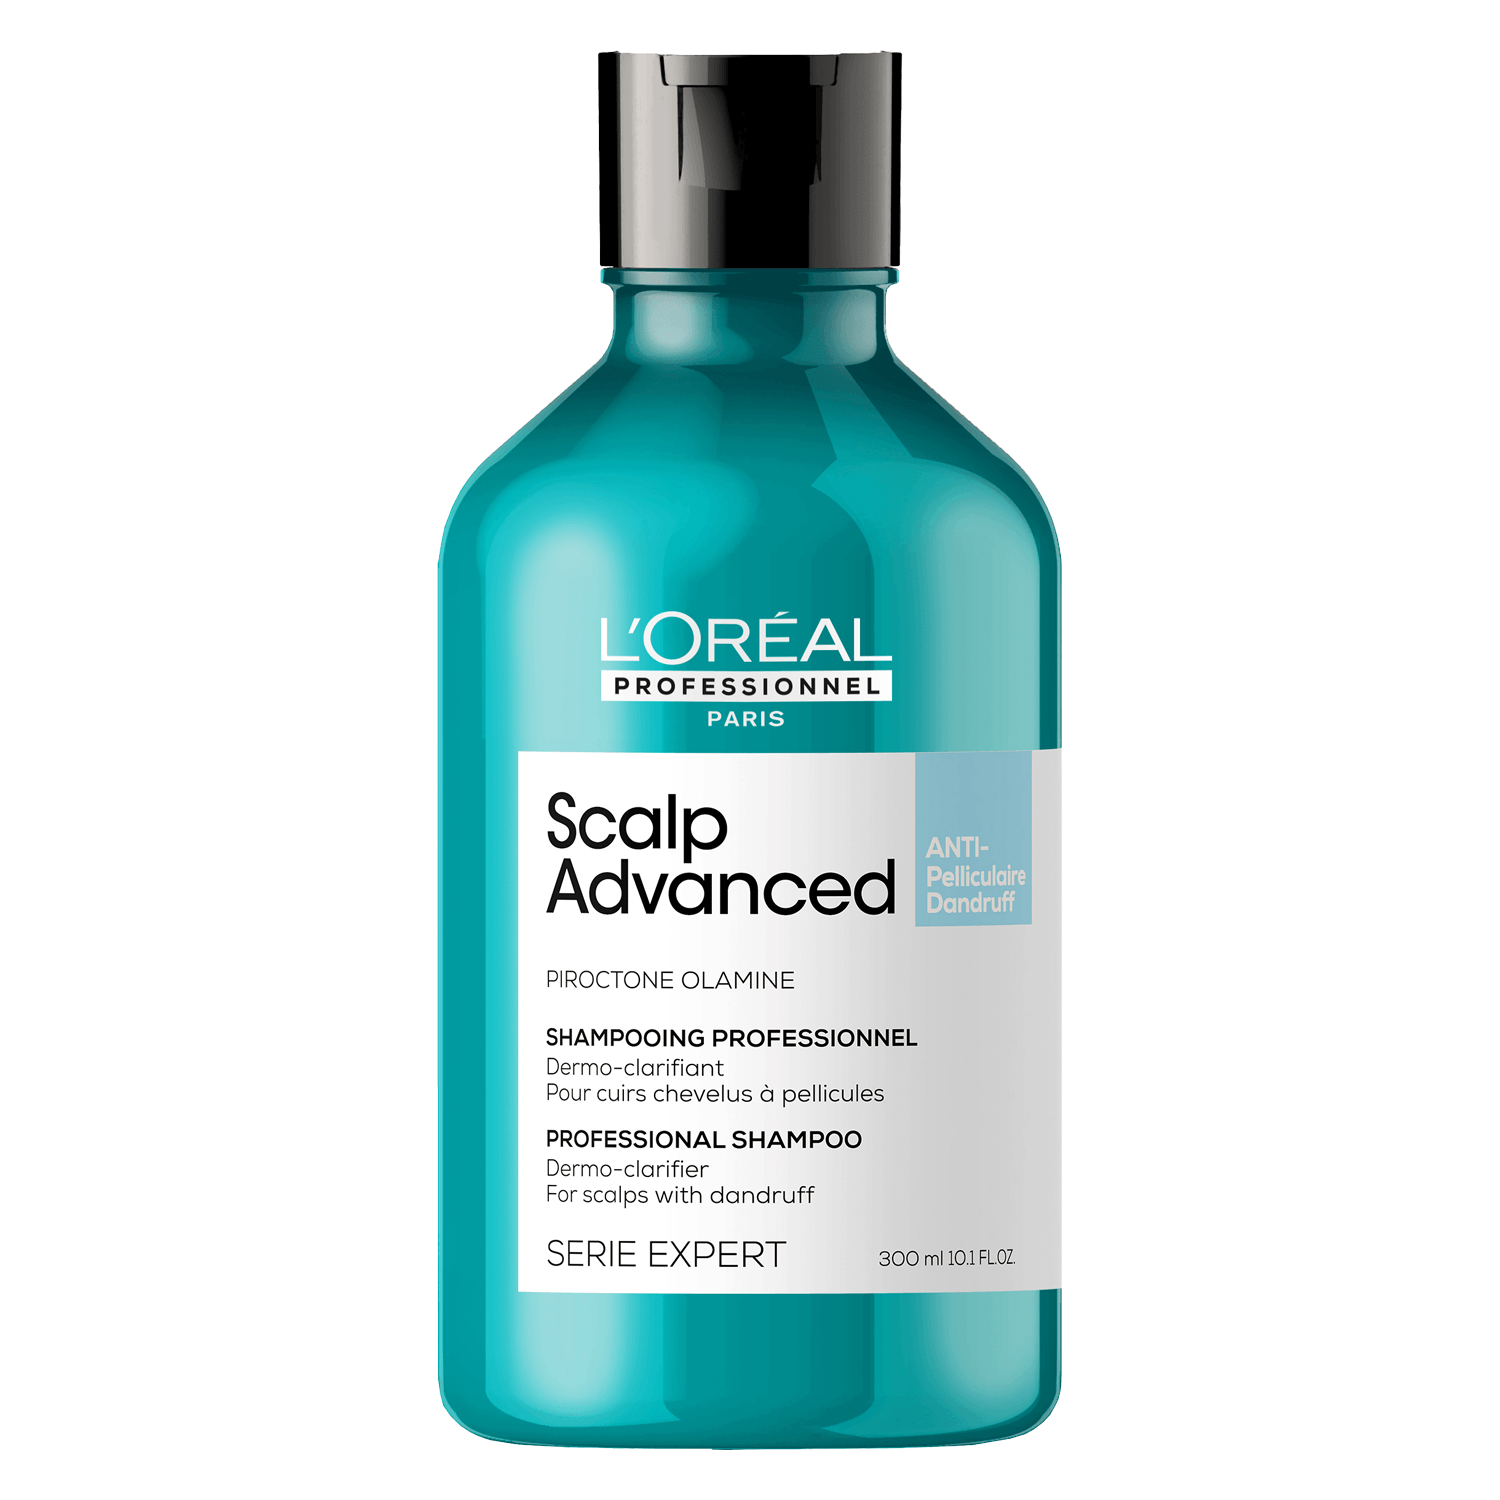 Produktbild von Série Expert Scalp Advanced - Anti-Dandruff Dermo-Clarifier Shampoo